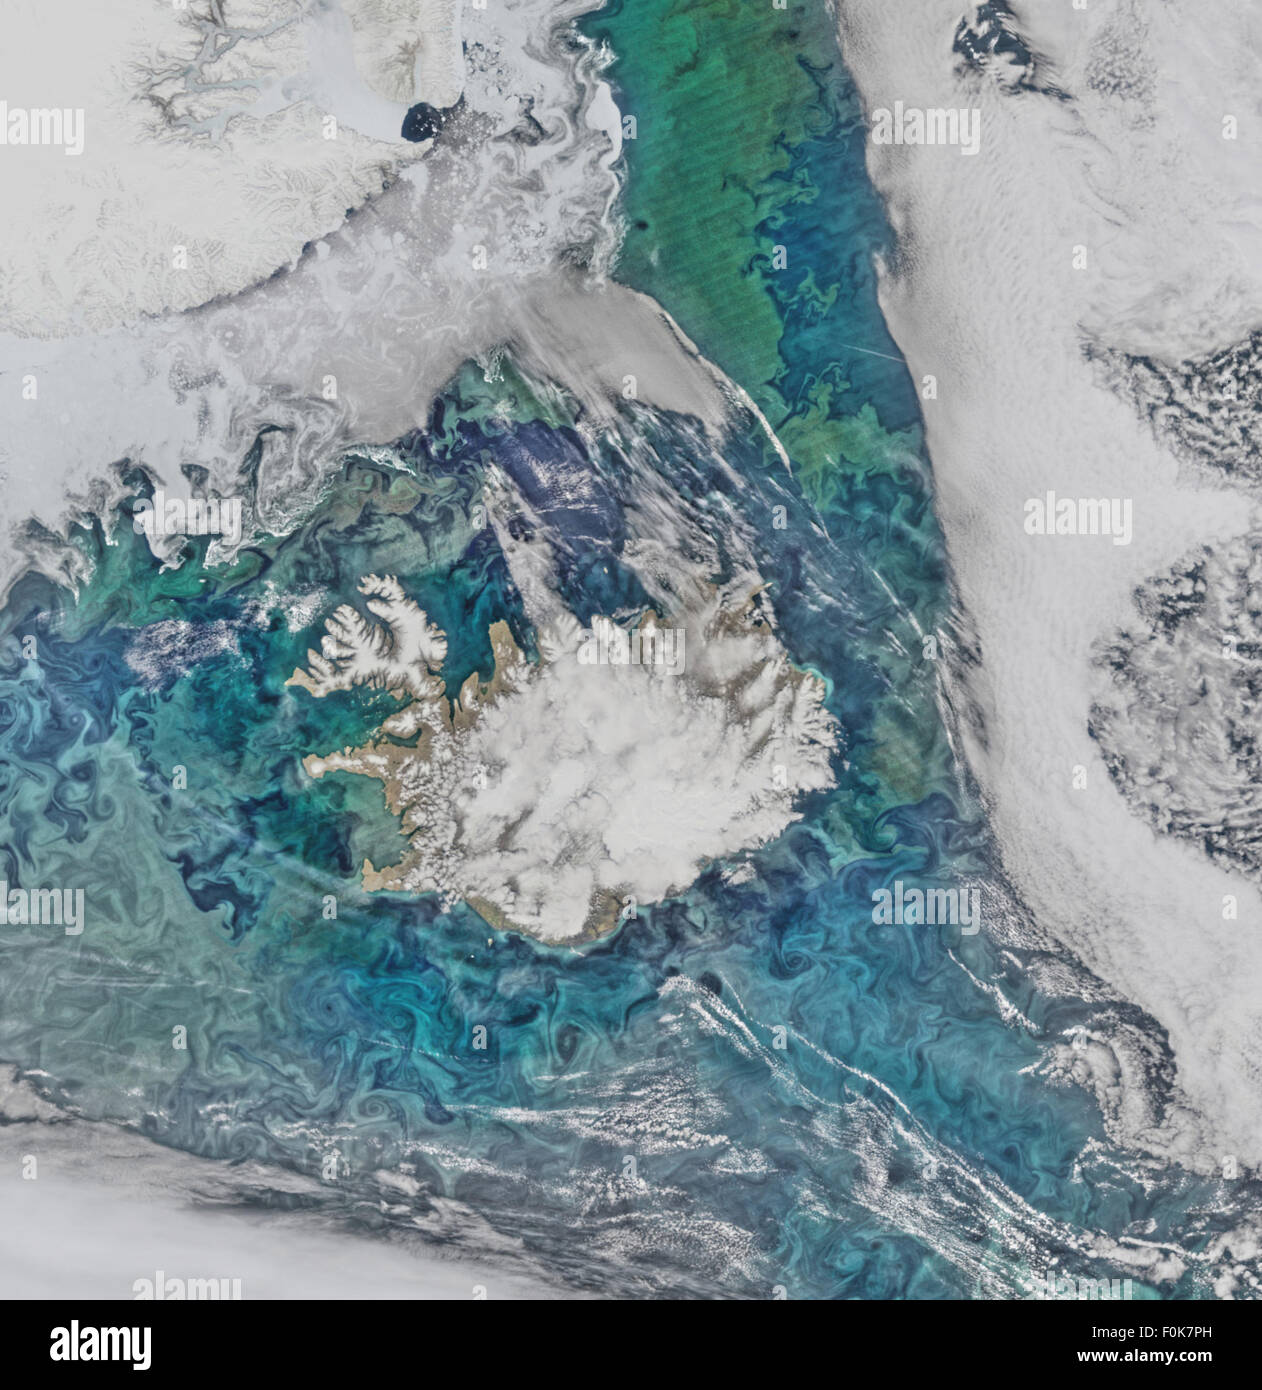 Las comunidades de fitoplancton y el mar de hielo limn el campo de flujo turbulento en torno a Islandia en este Suomi-NPP/VIIRS escena Foto de stock